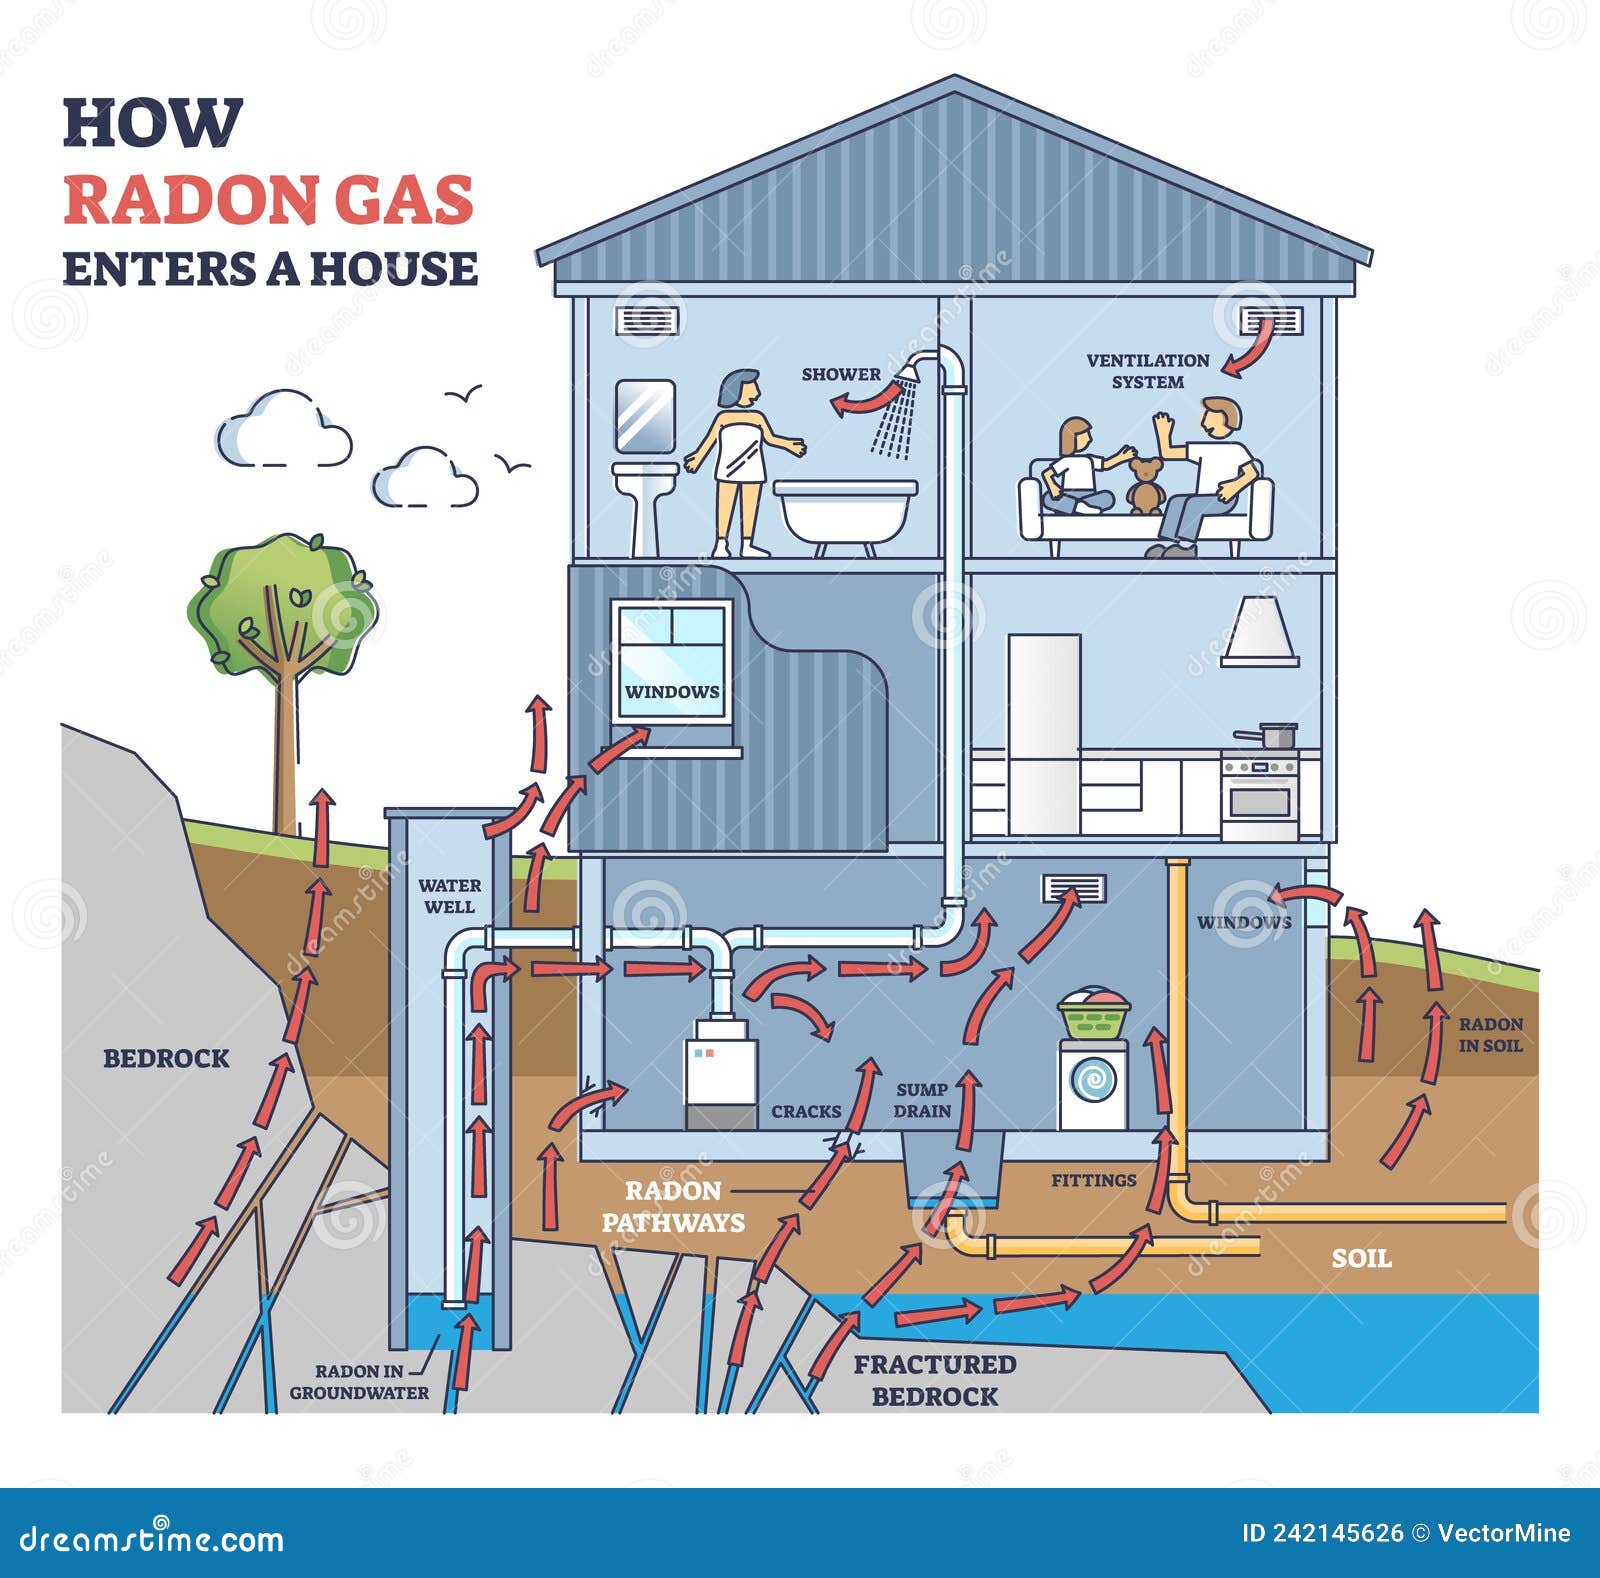 Qué es el gas radón y como saber si lo tienes en casa? — Arrevol